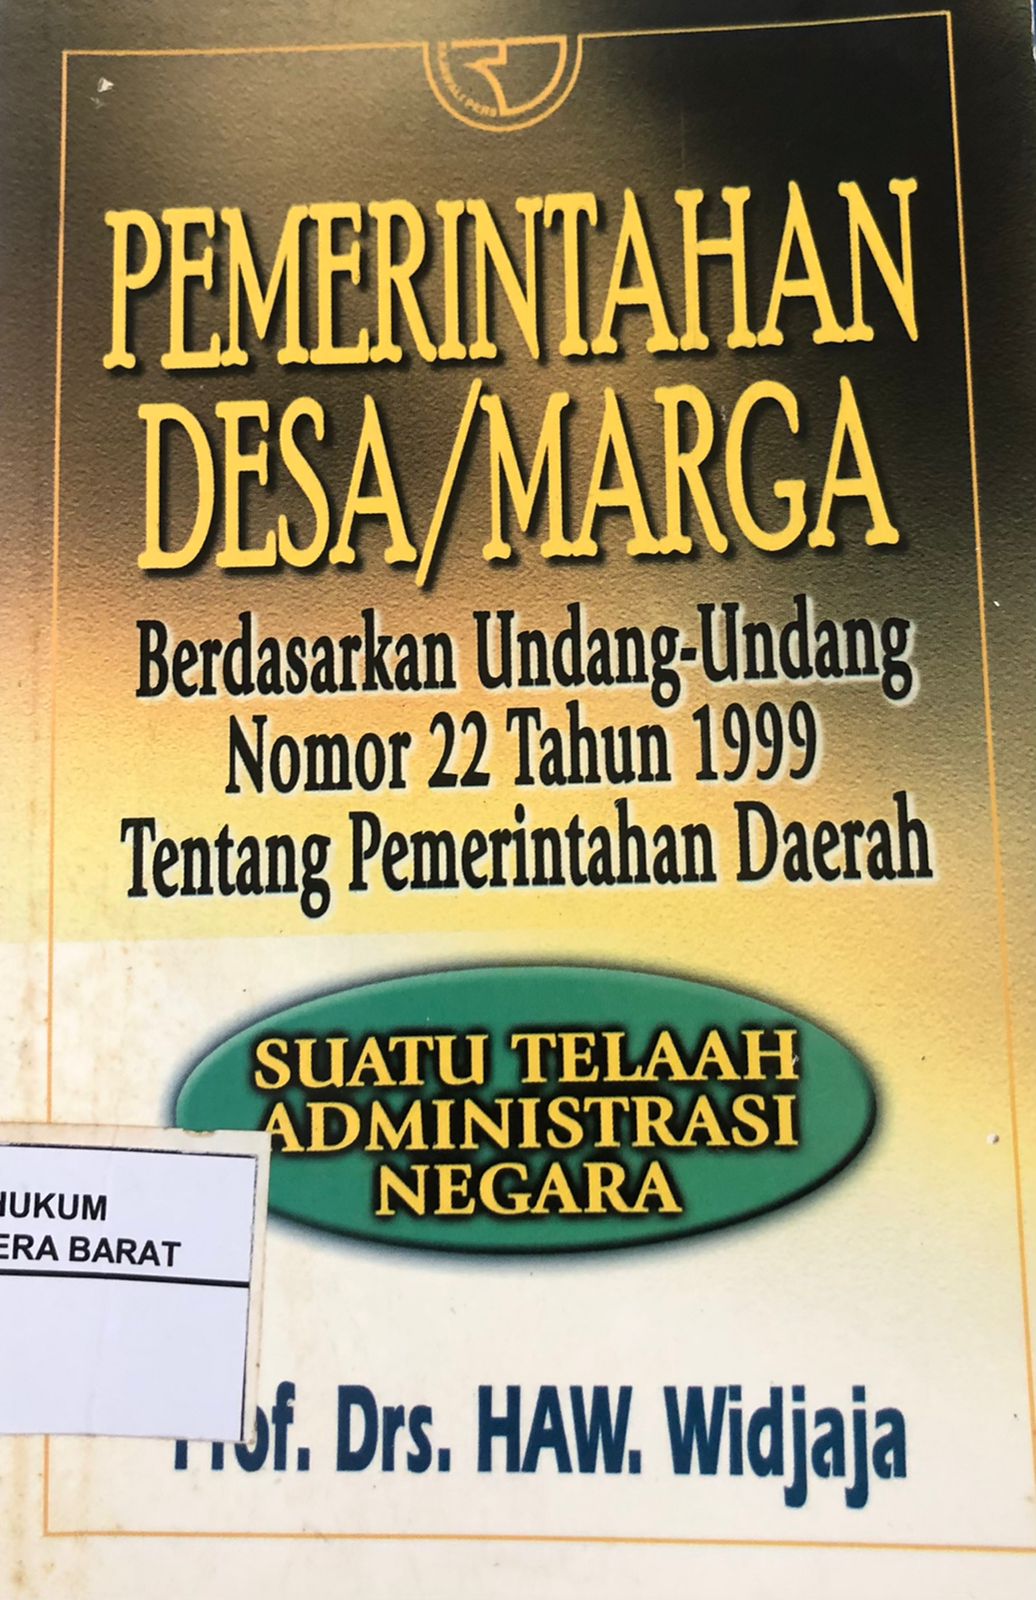 Pemerintahan Desa/Marga Berdasarkan Undang-Undang No. 22 Tahun 1999 Tentang Pemerintahan Daerah